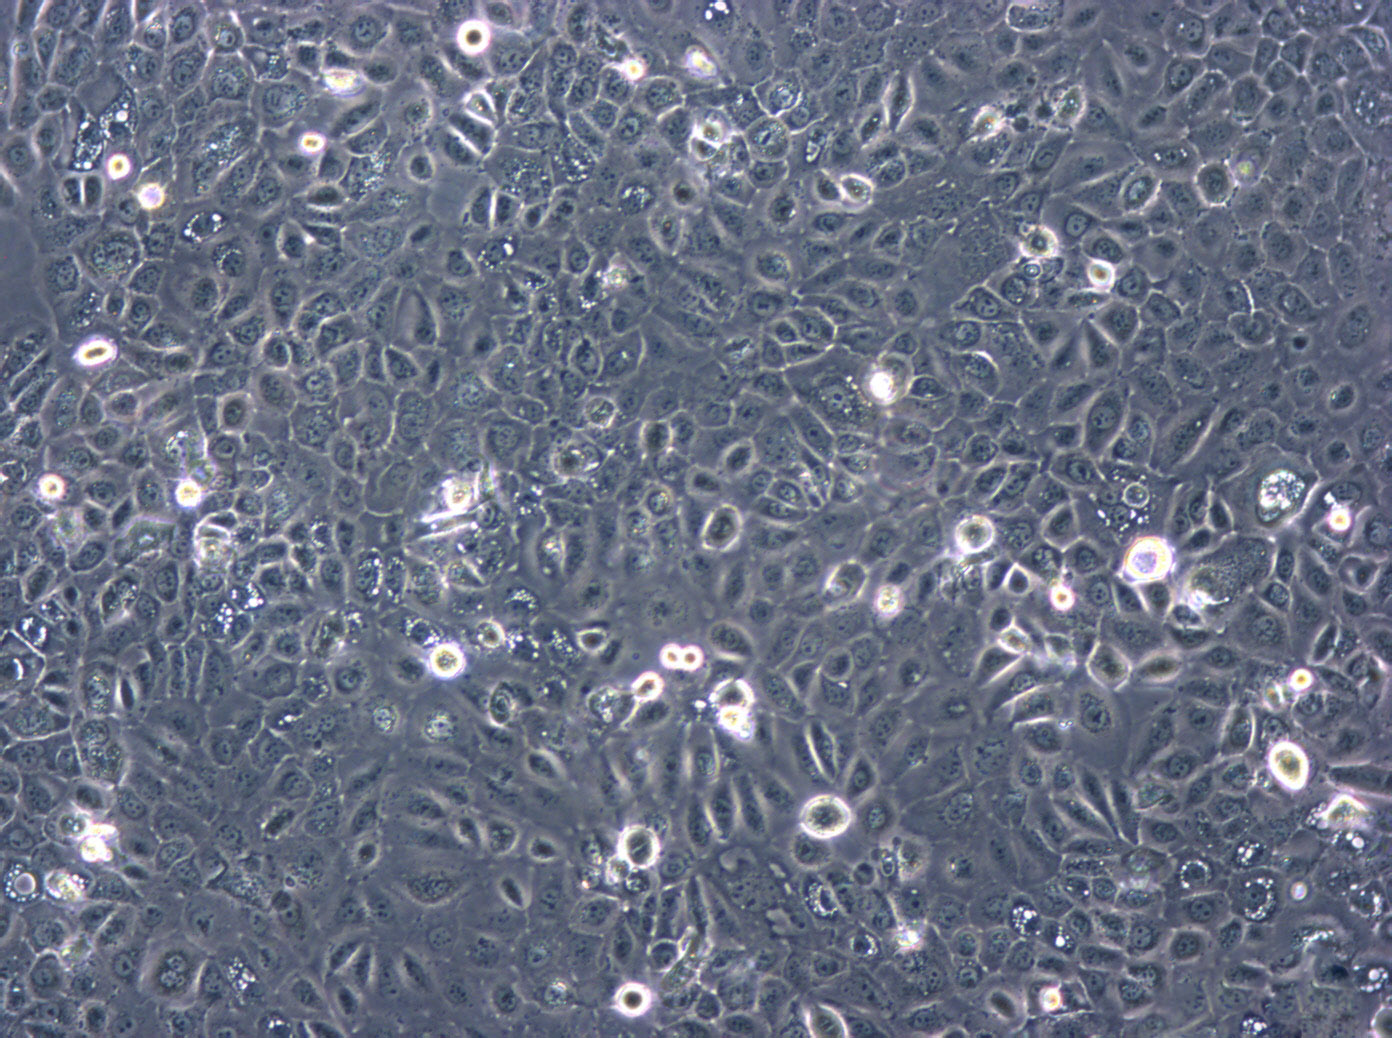 HeLa 229 Cells|人宫颈癌细胞系,HeLa 229 Cells